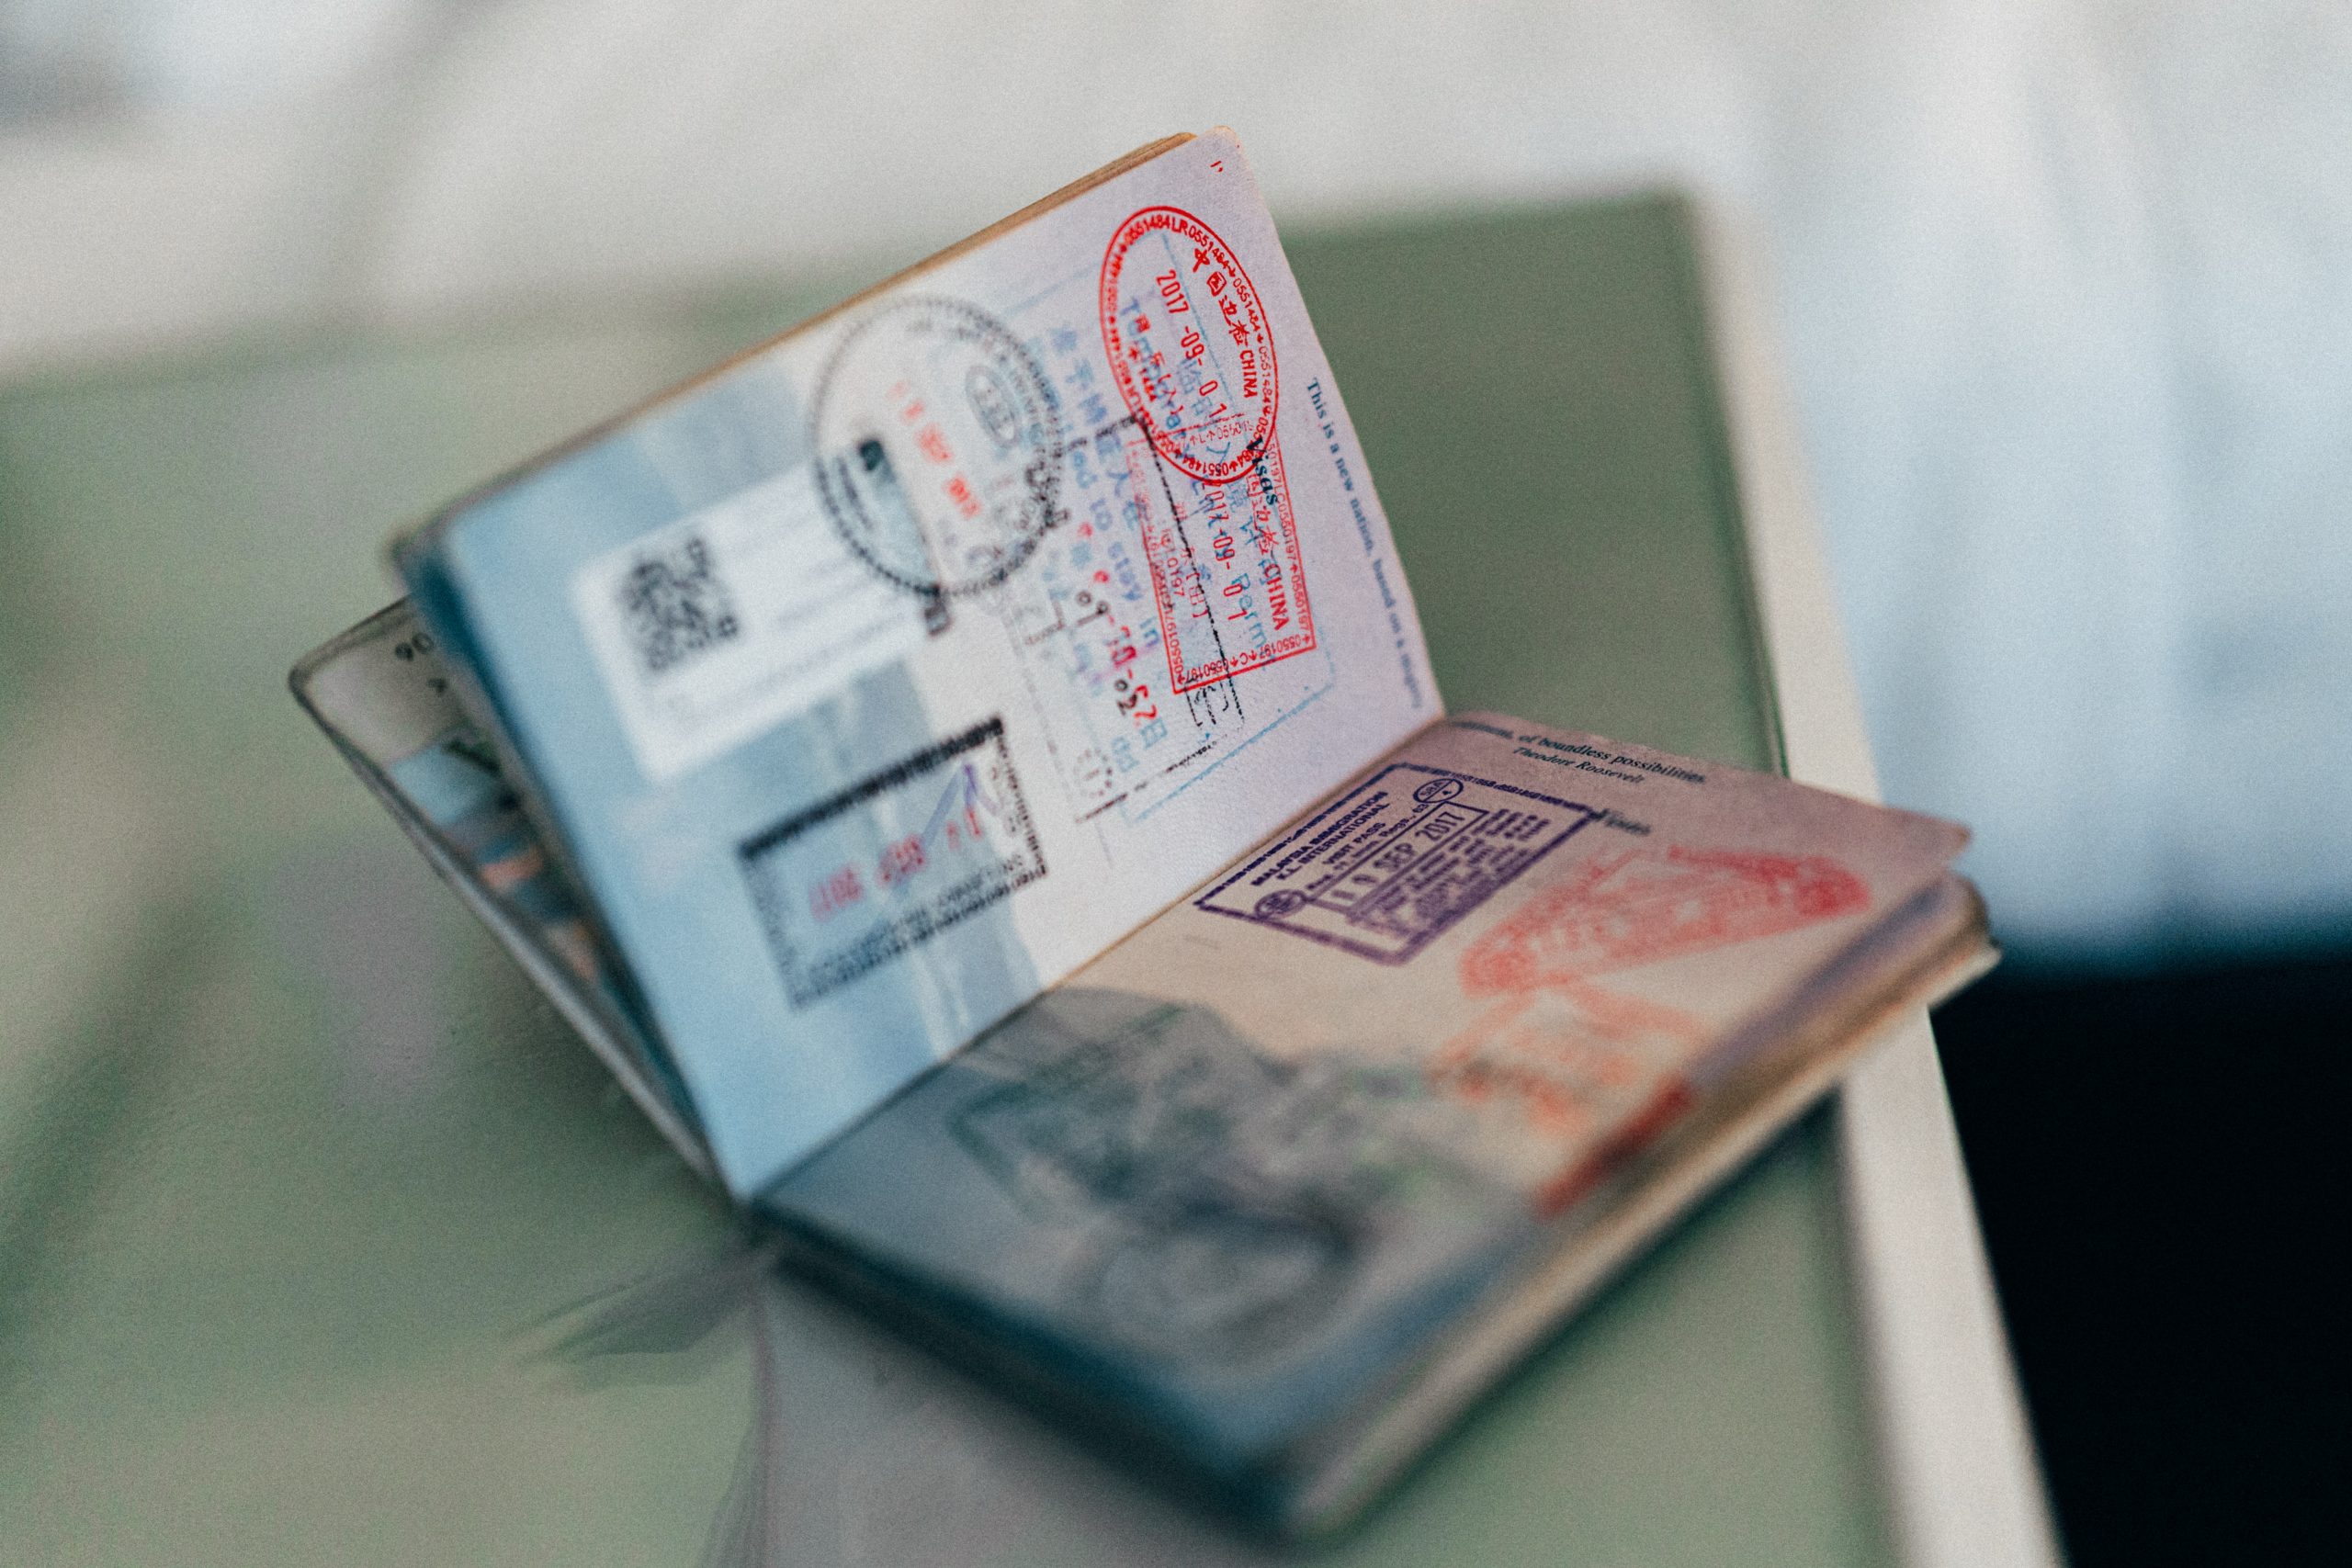 Et pass med mange stempler. Foto.